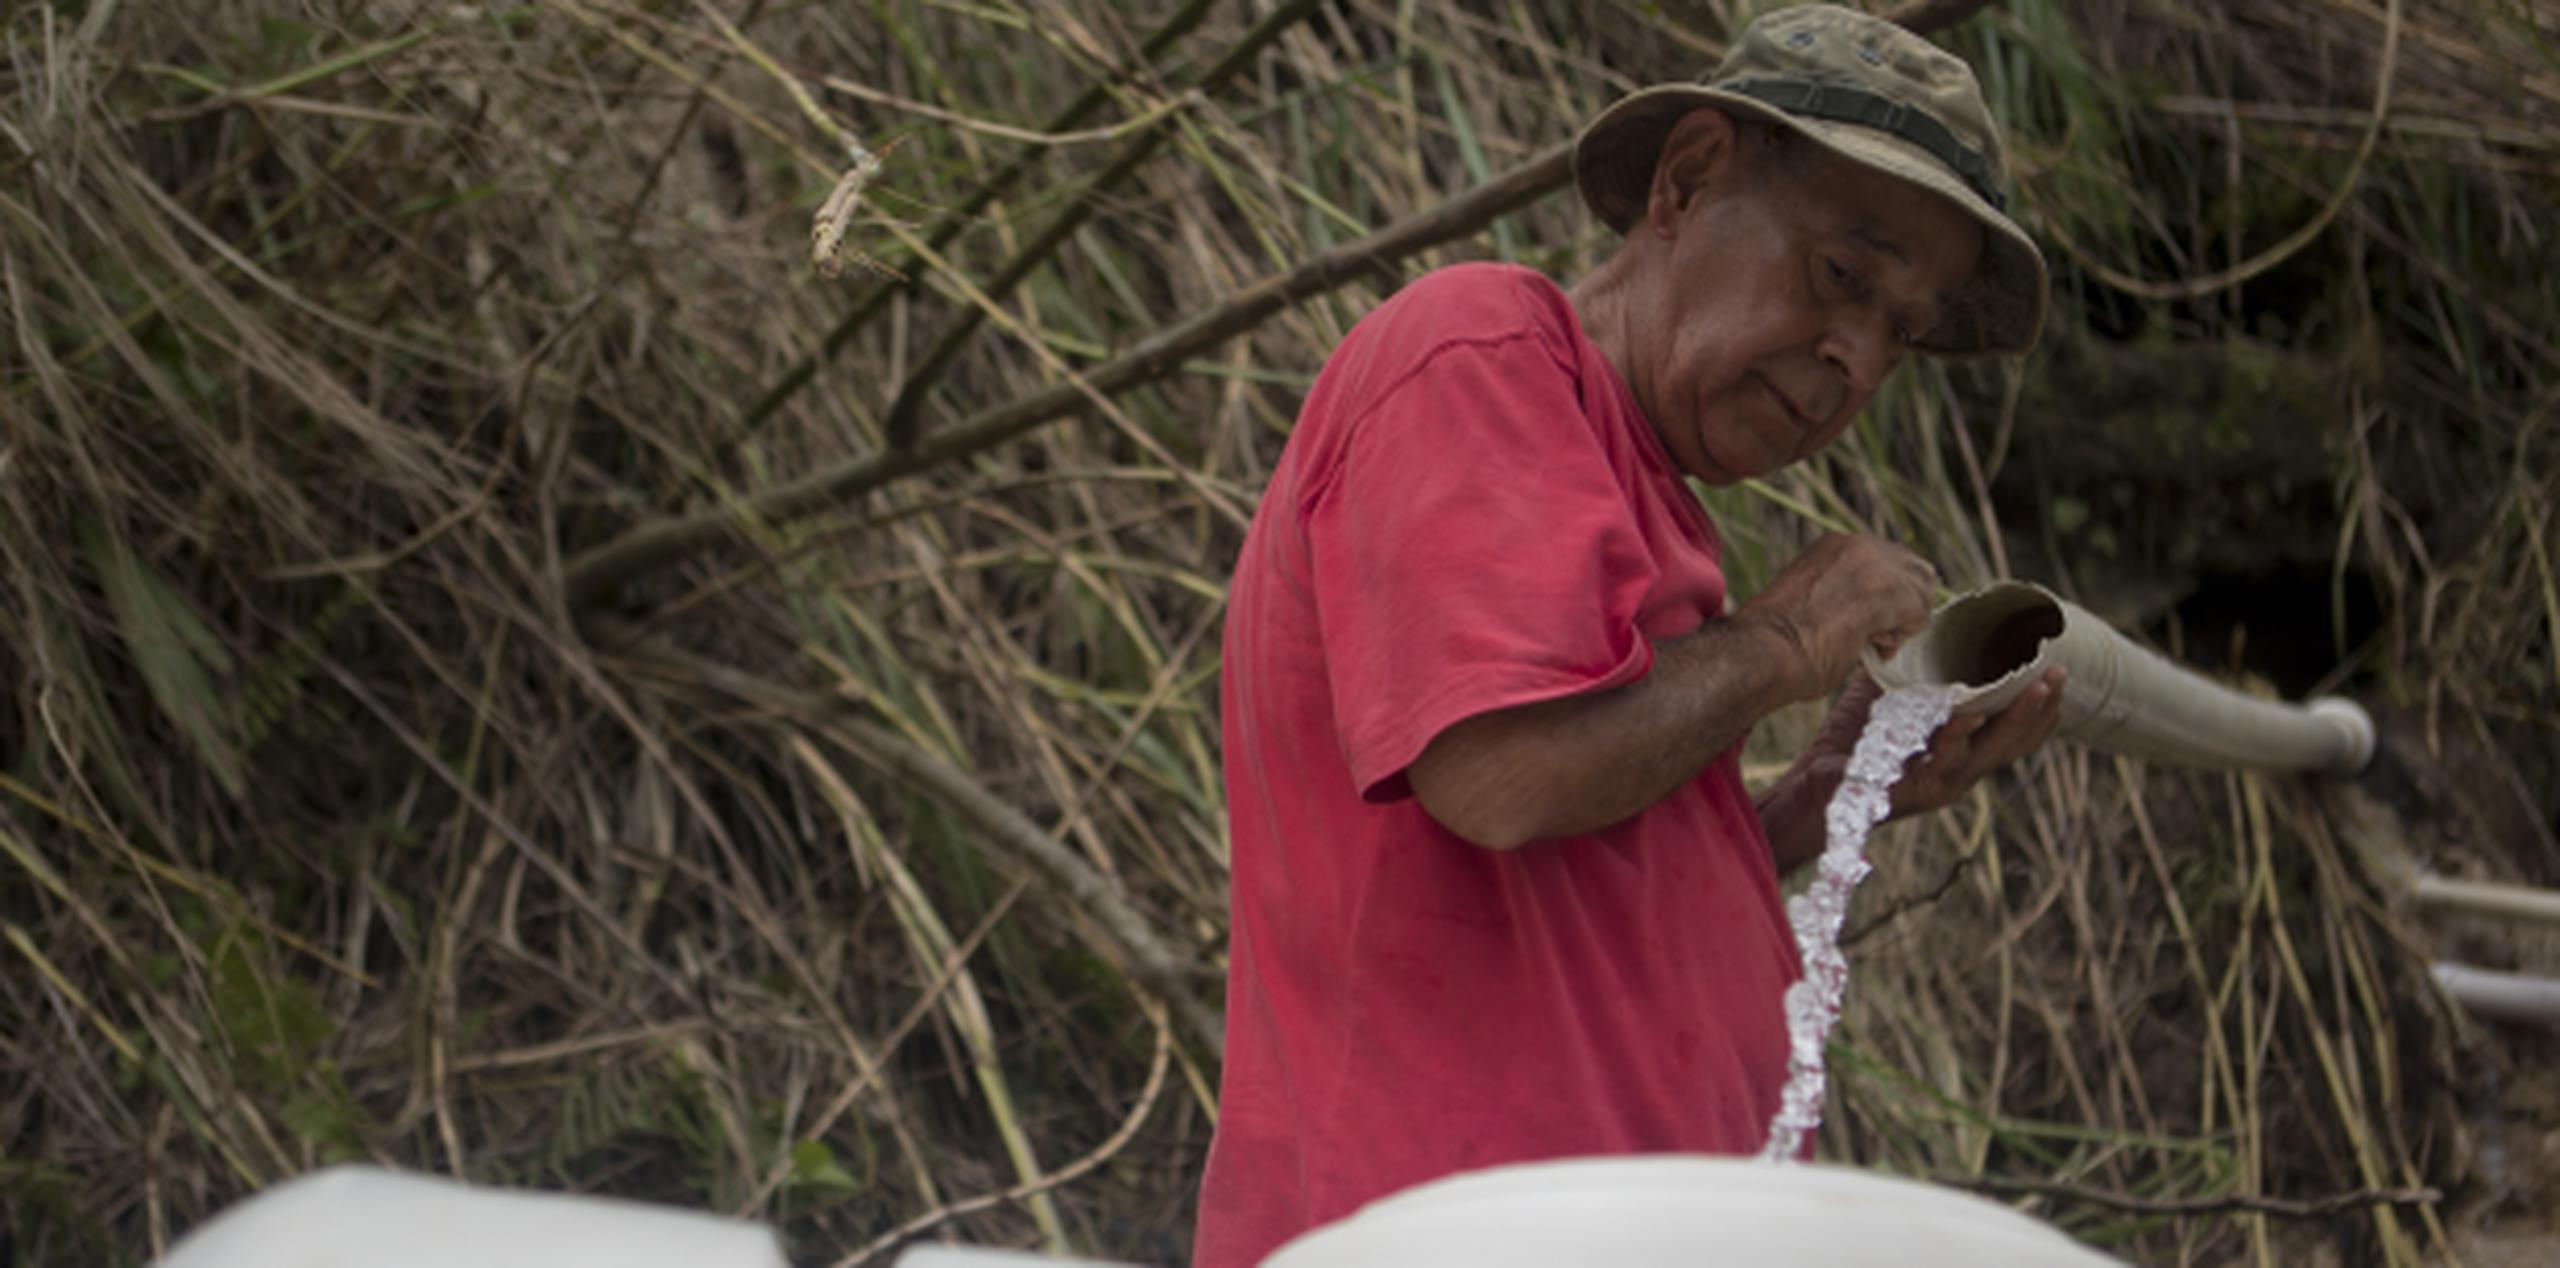 José Rodríguez es parte de las cientos de familias que acuden al sector El Chorro, en la carretera PR-142 hacia Corozal, que utilizan chorros de un manantial cercano para poder tener agua. (teresa.canino@gfrmedia.com)